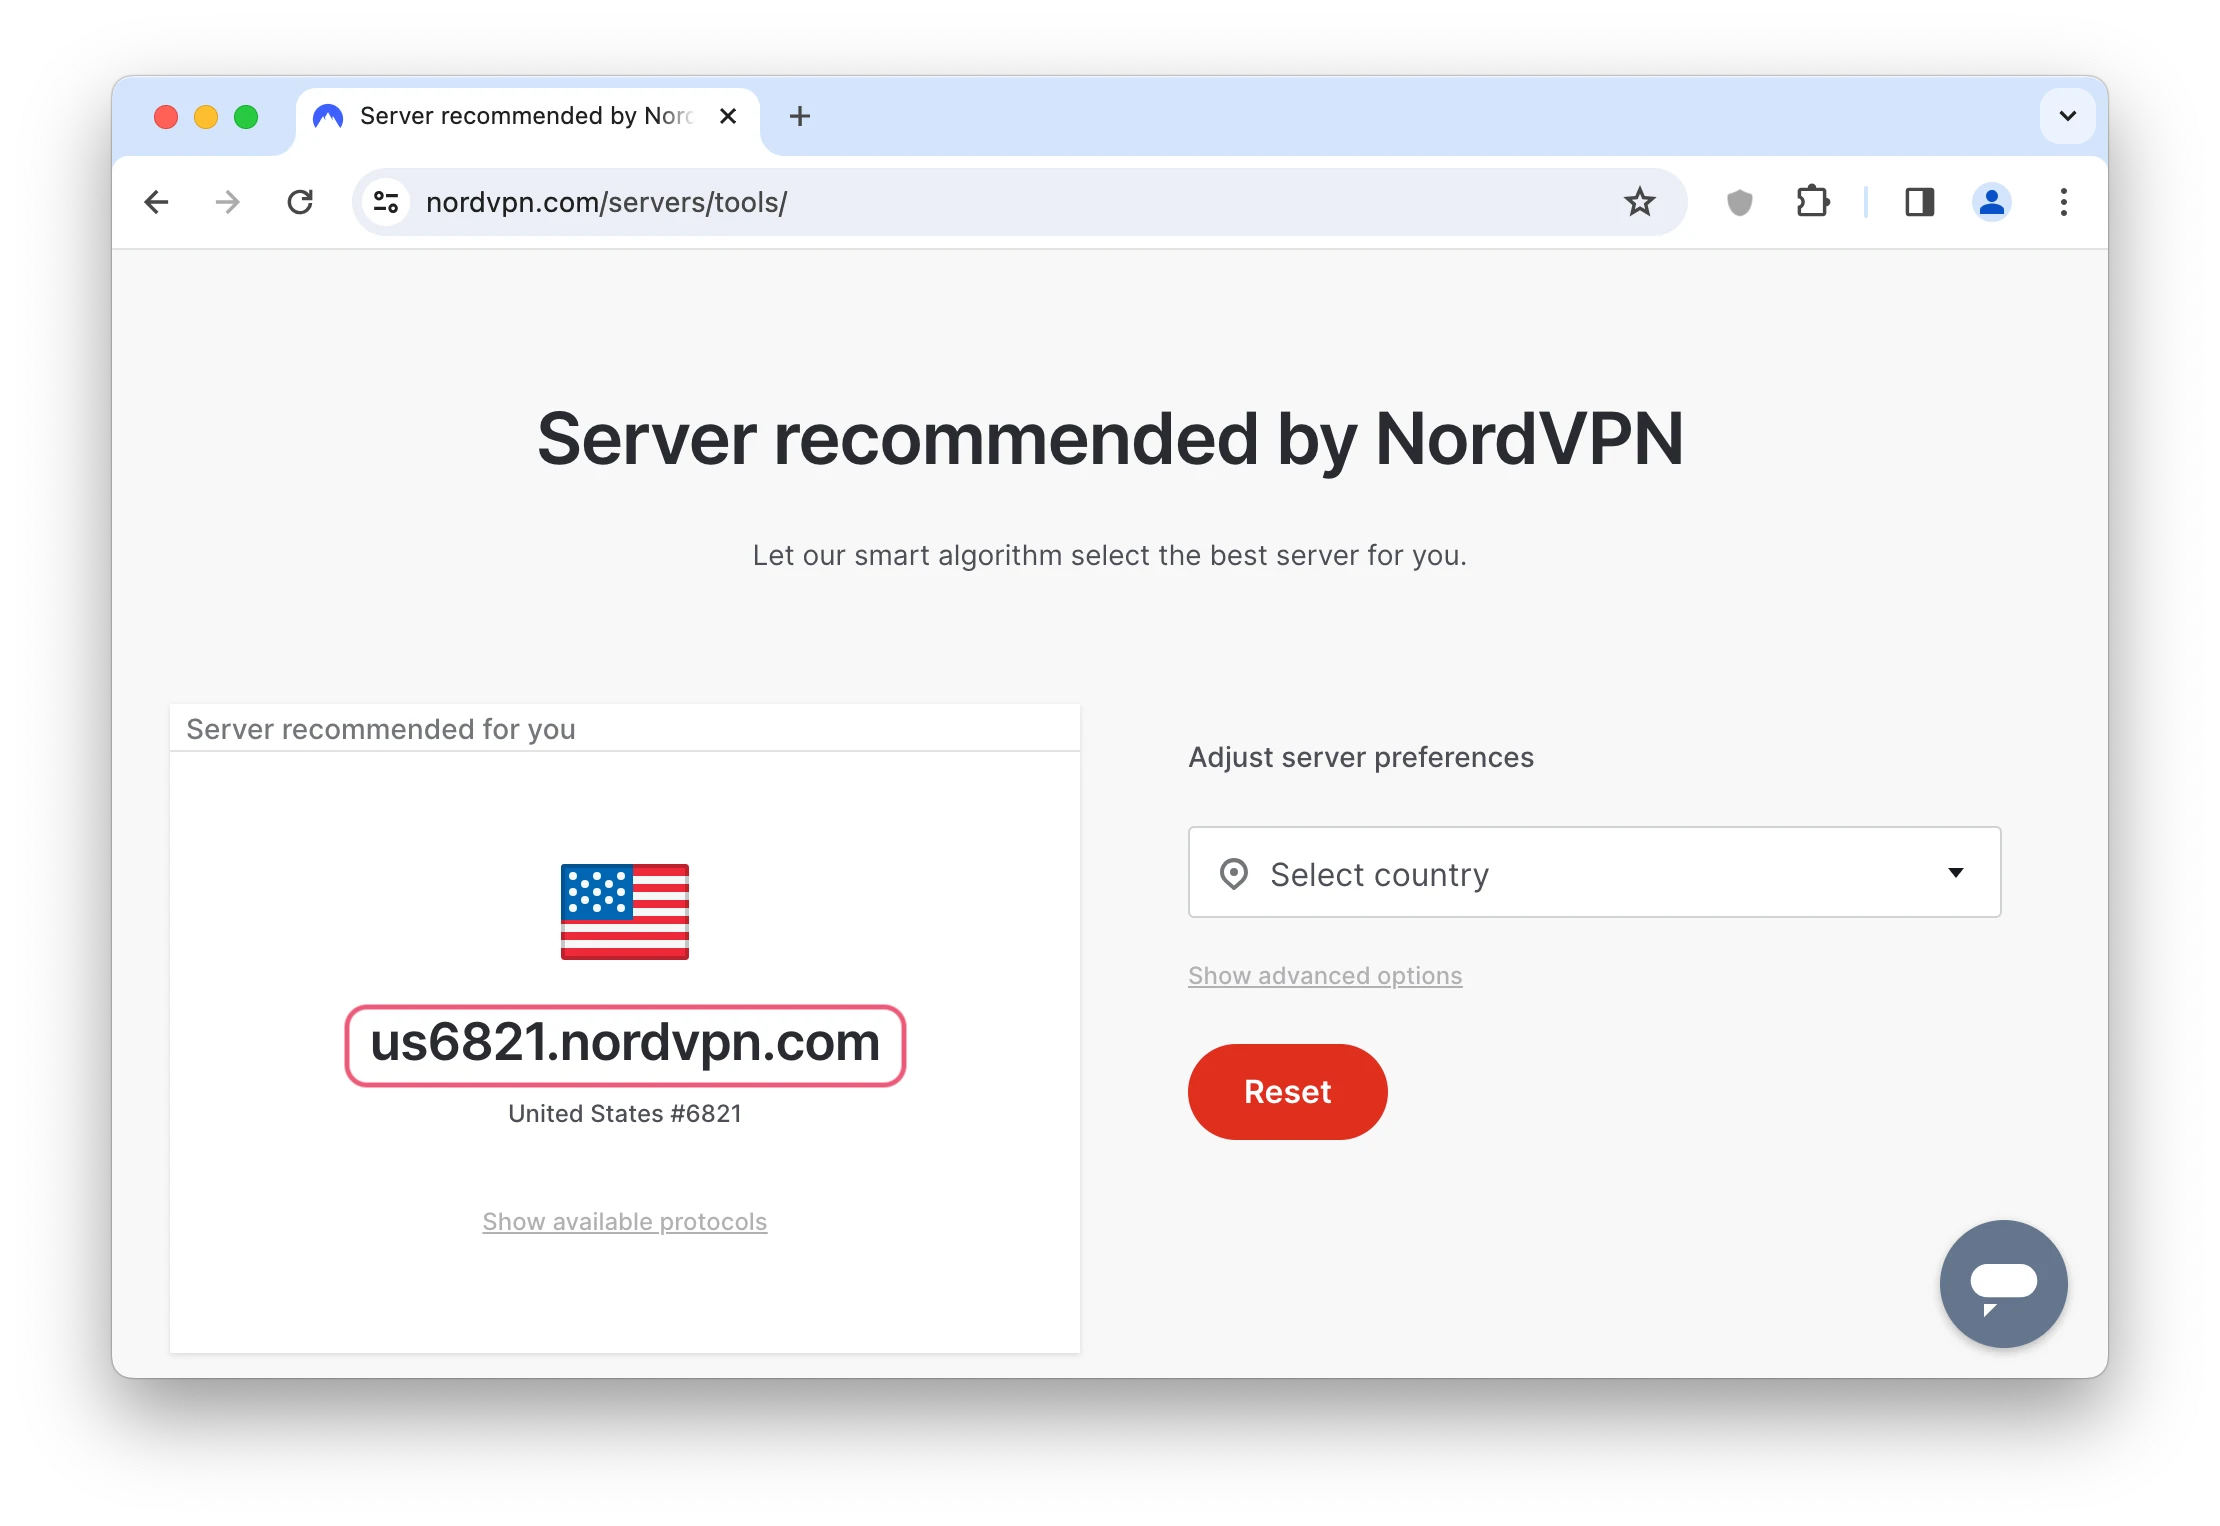 NordVPN recommended server